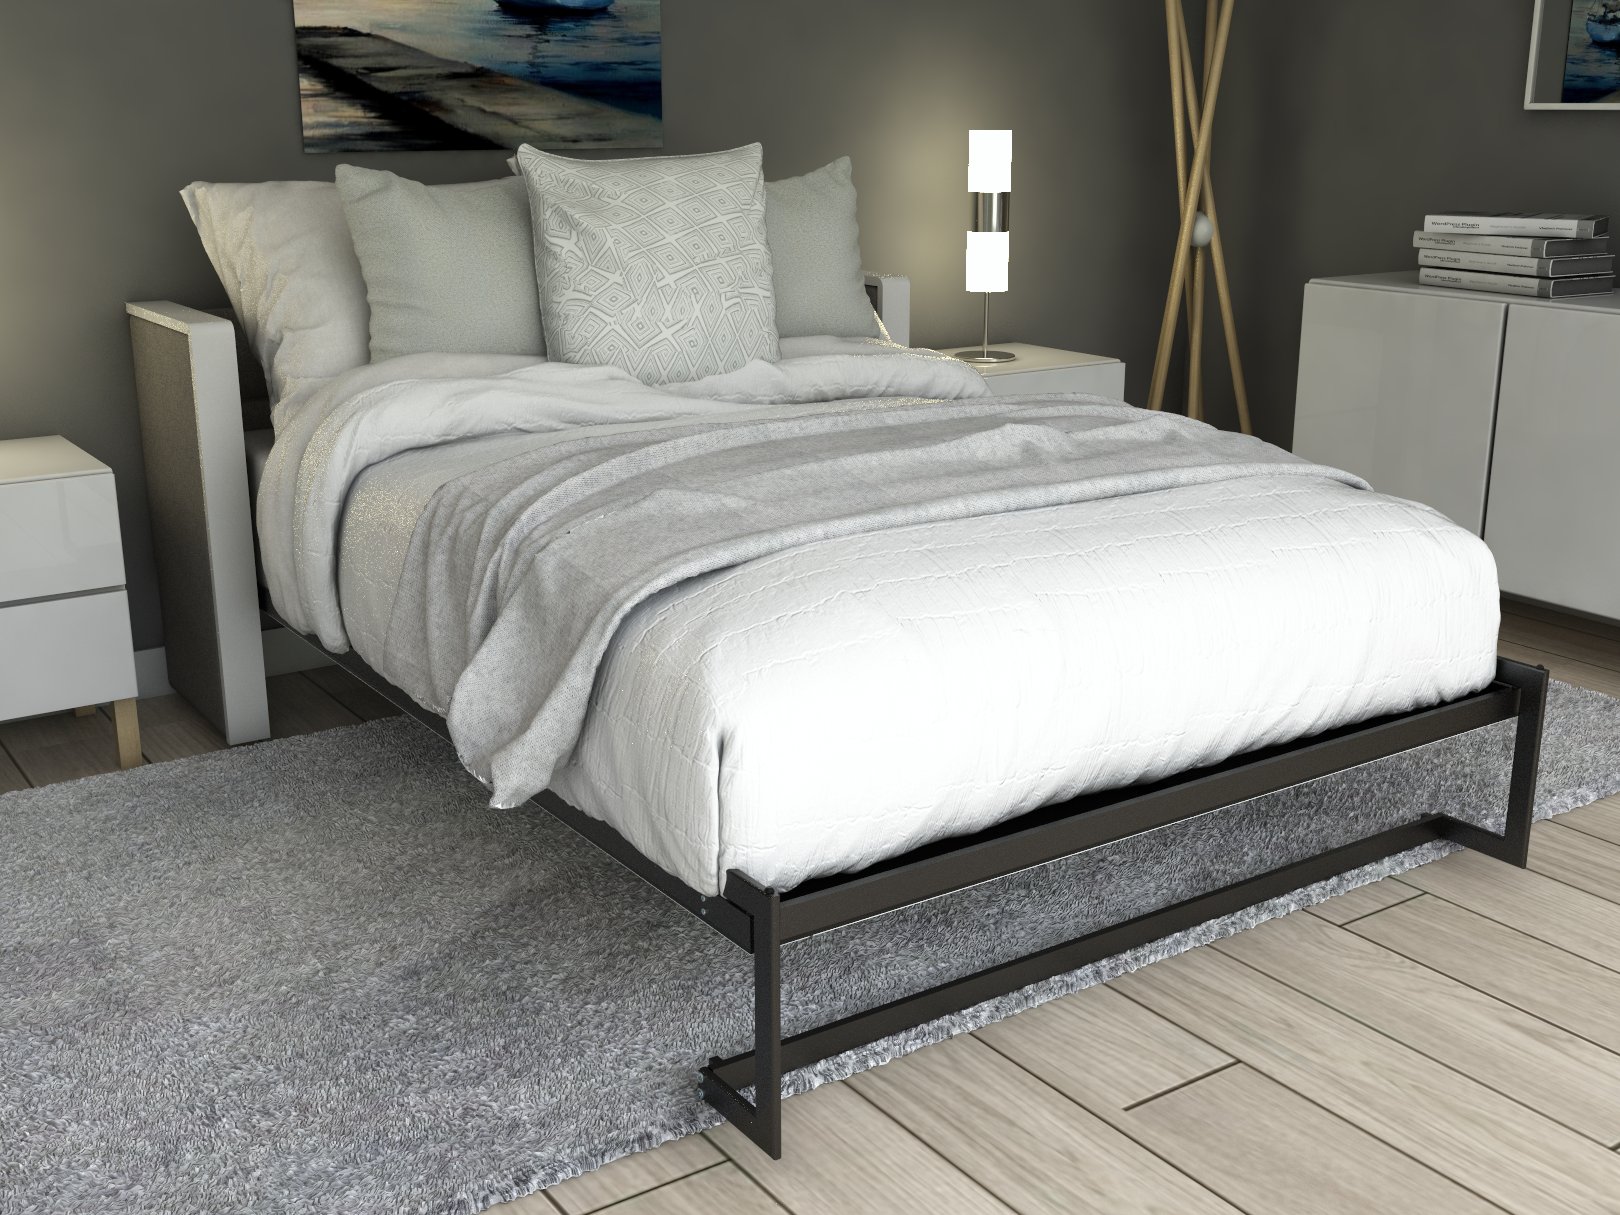 Esentelle base de cama matrimonial con laminado de madera color concreto // MS